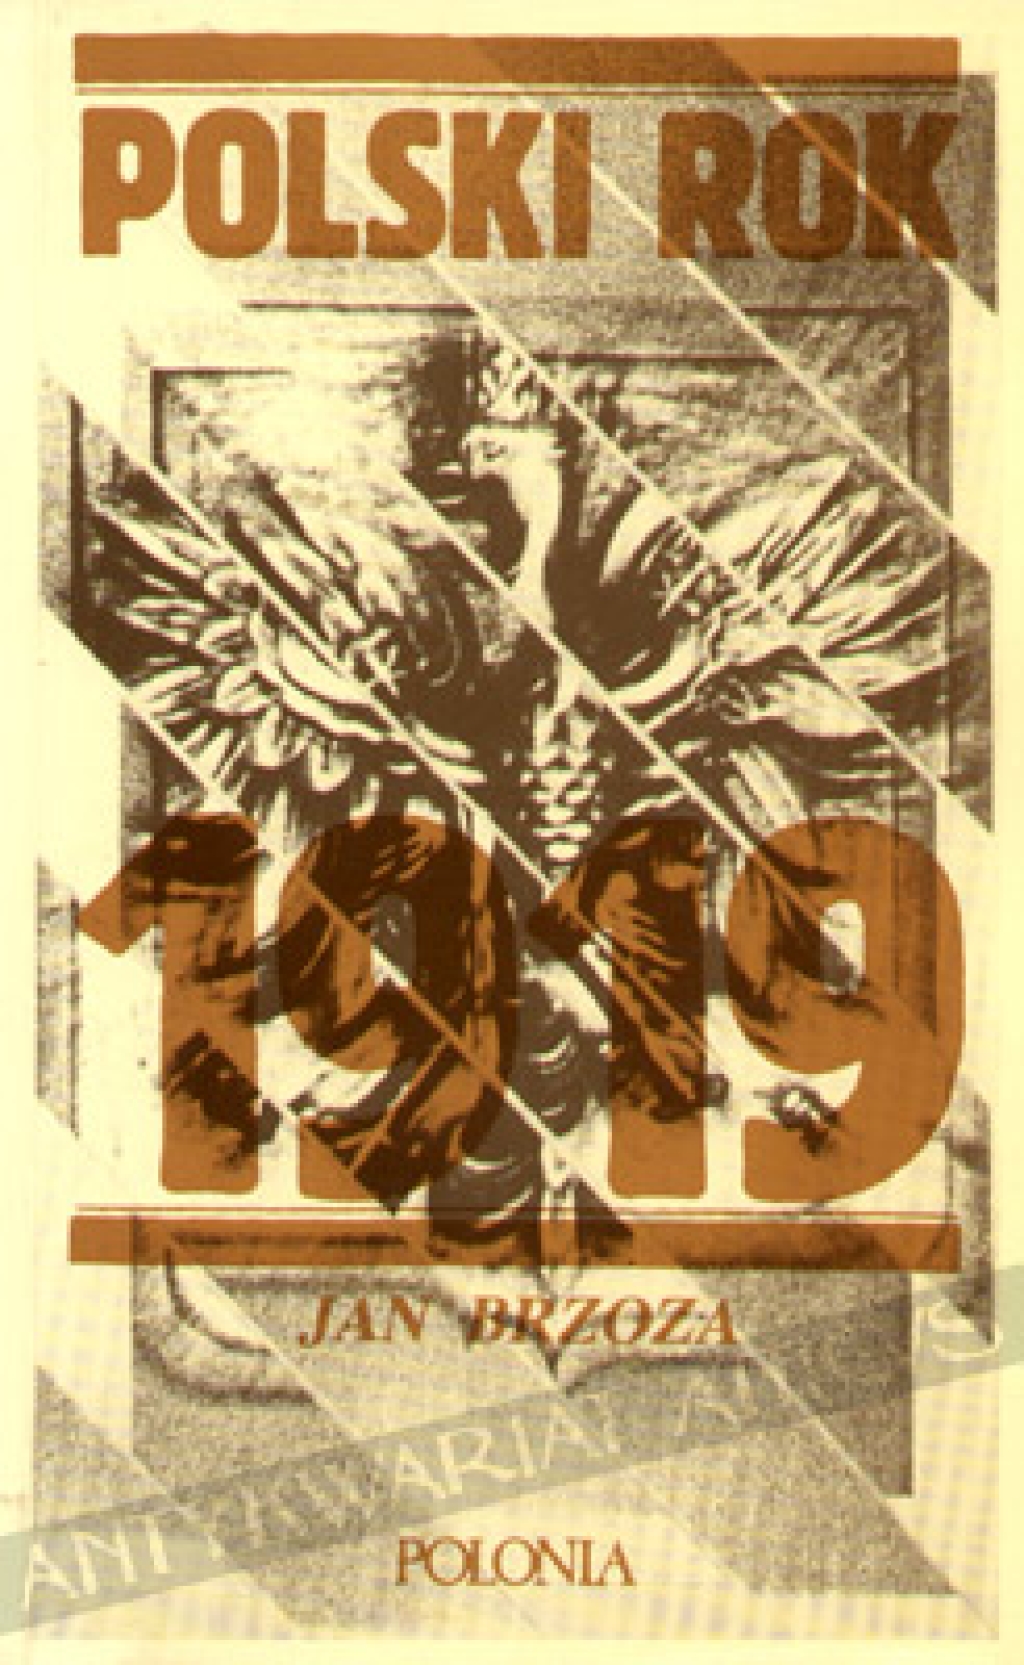 Polski rok 1919